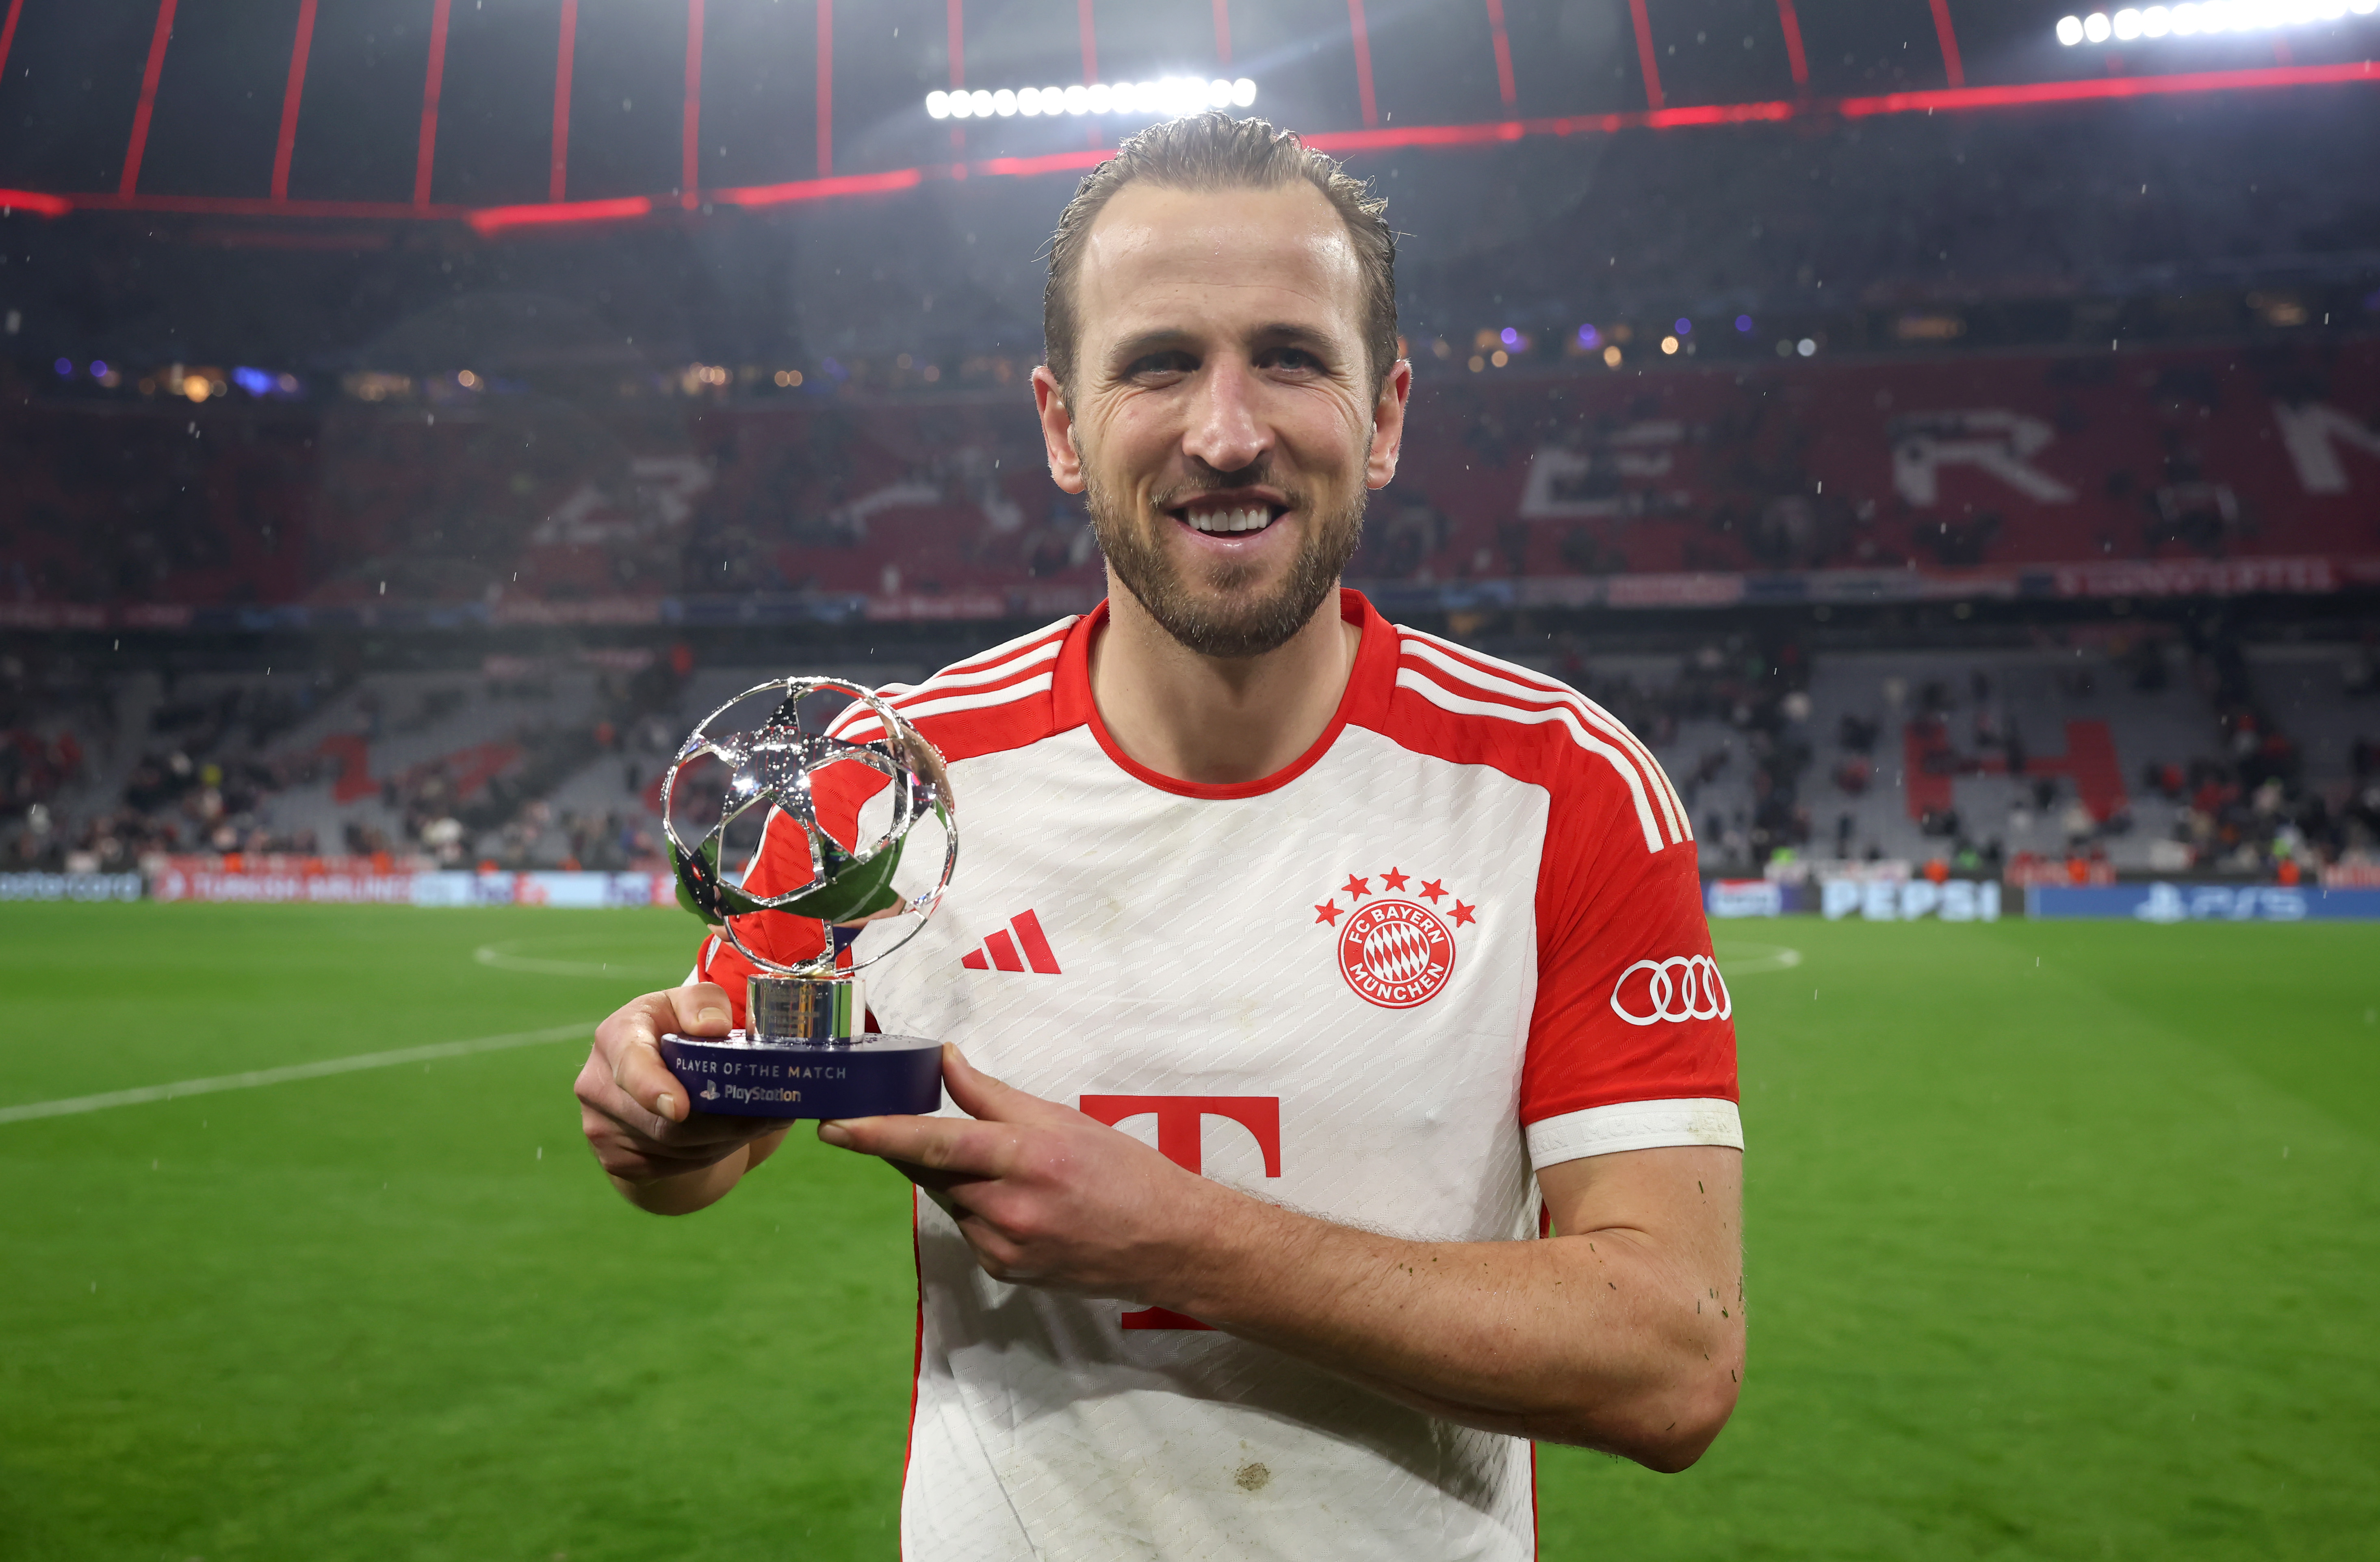 Der Stürmer erhielt die Auszeichnung „Man of the Match“.